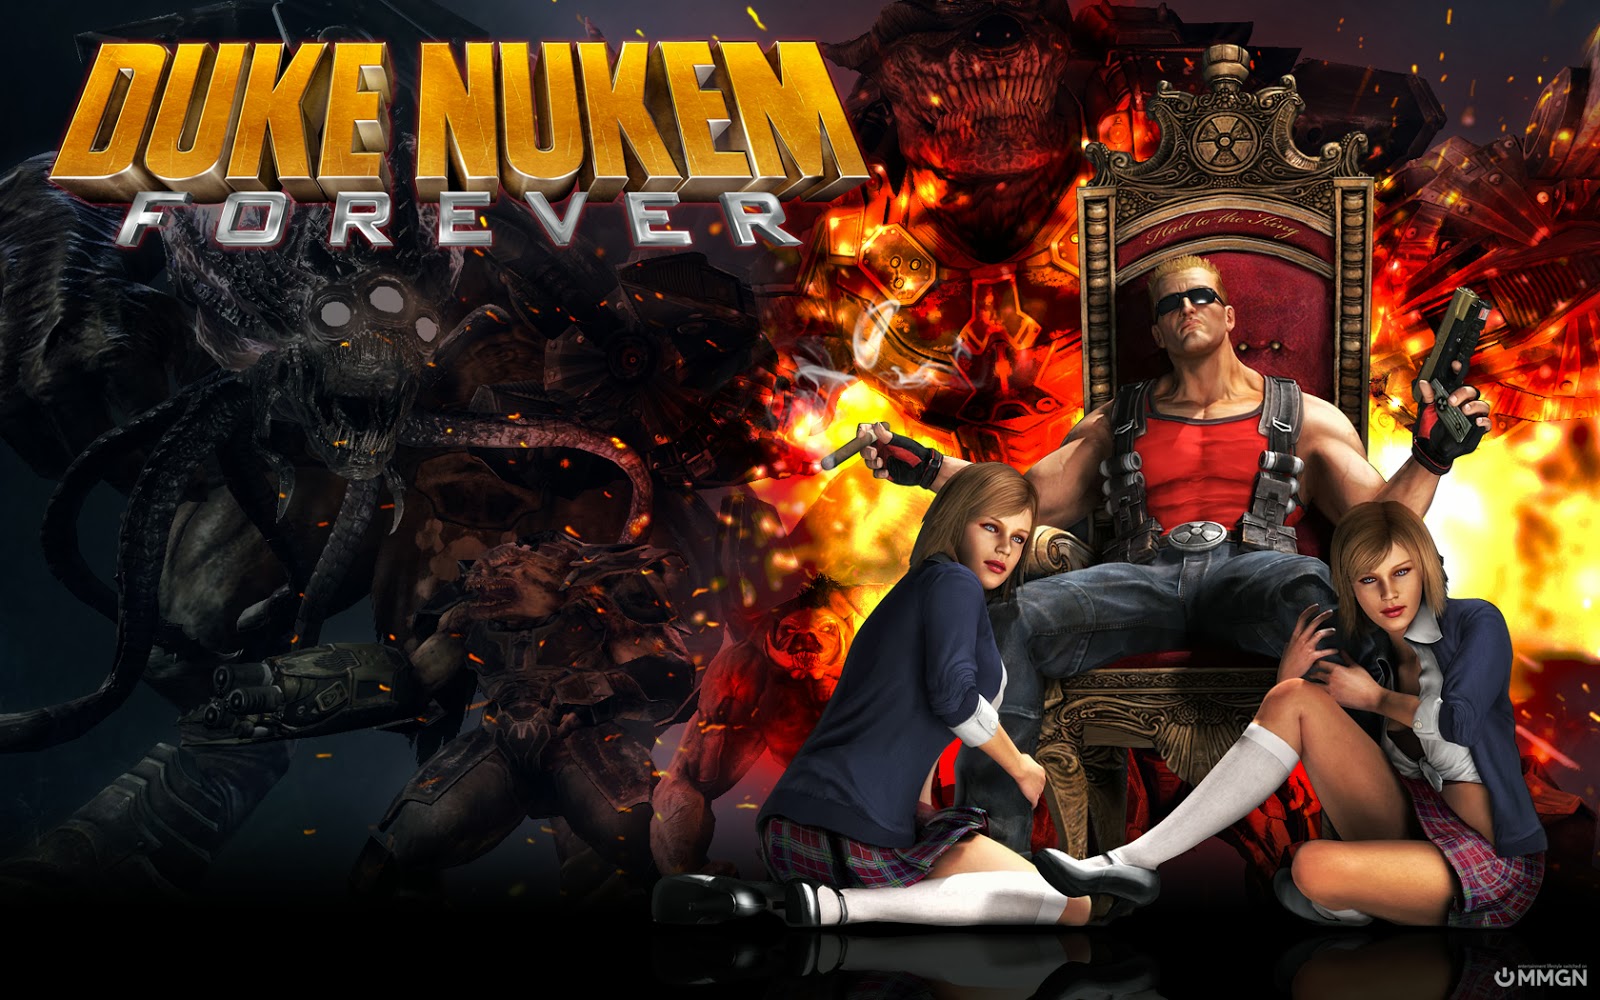 Duke Nukem 3D GenB